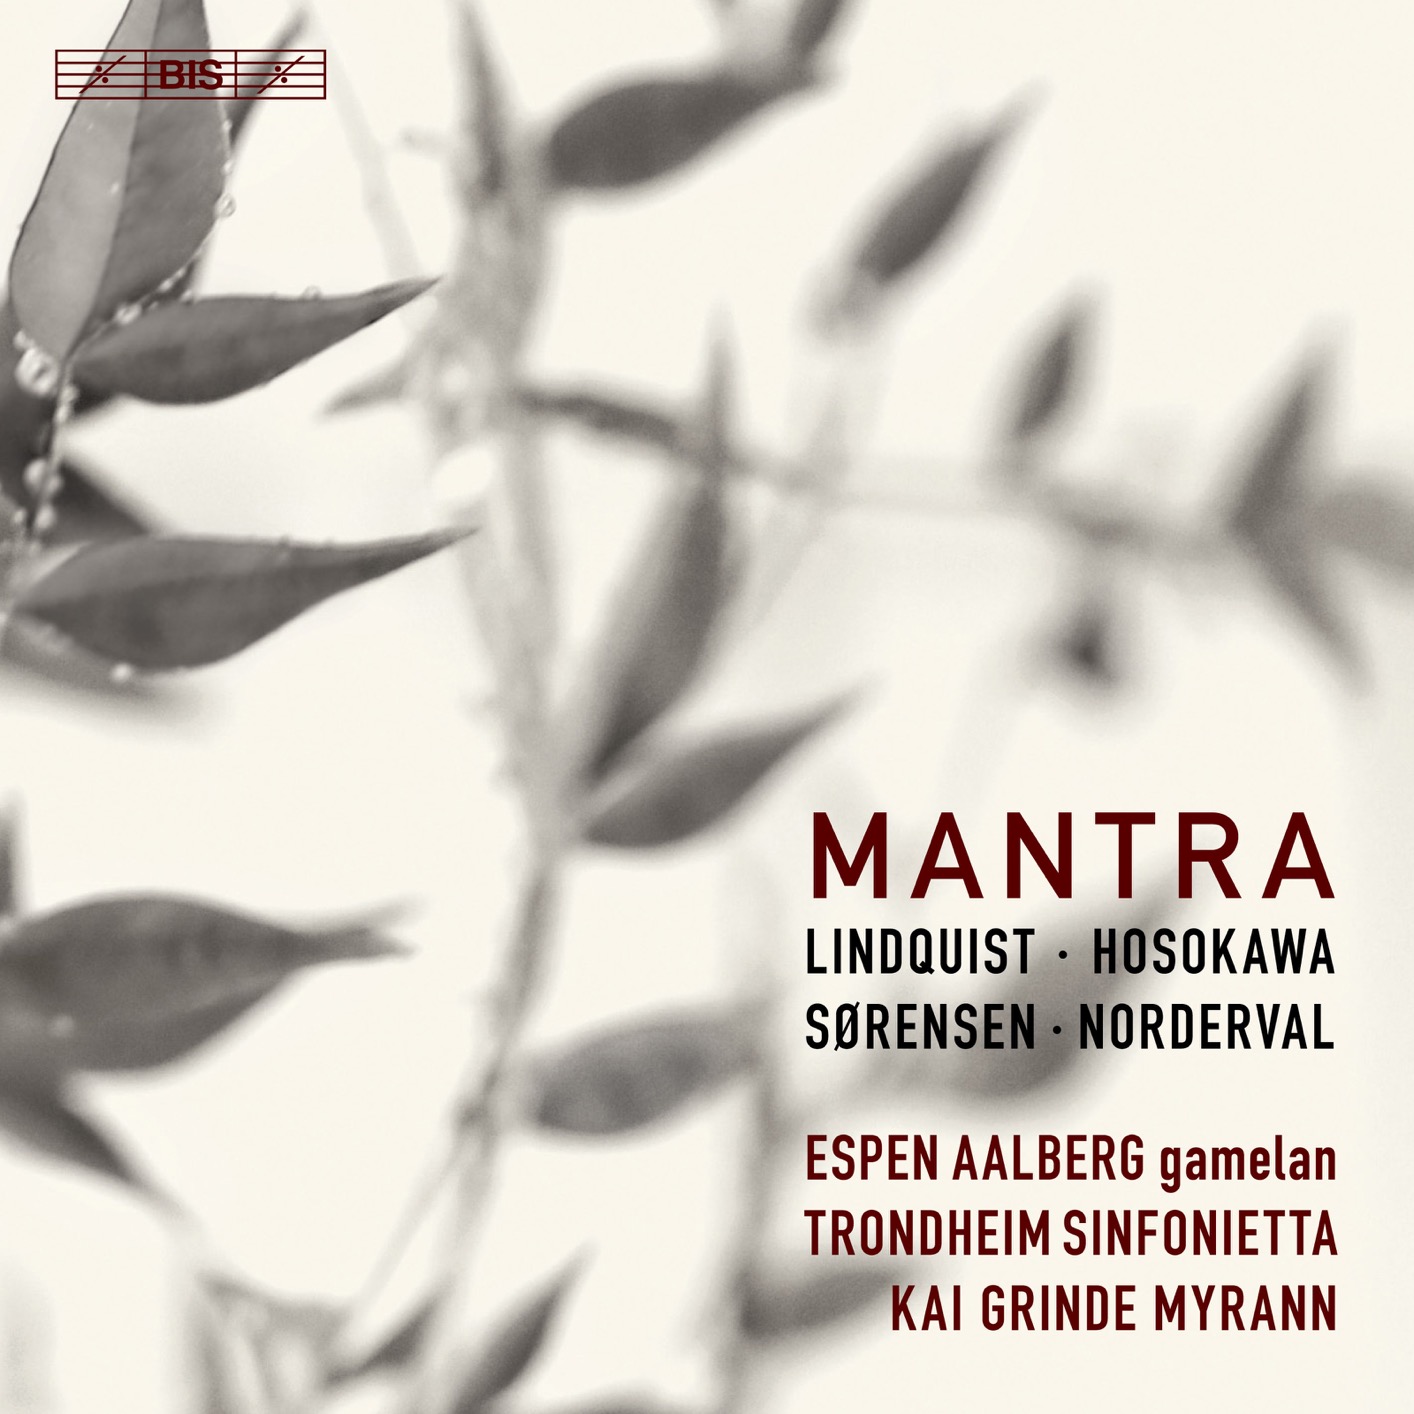 Espen Aalberg, Trondheim Sinfonietta & Kai Grinde Myrann – Mantra (2018) [FLAC 24bit/96kHz]